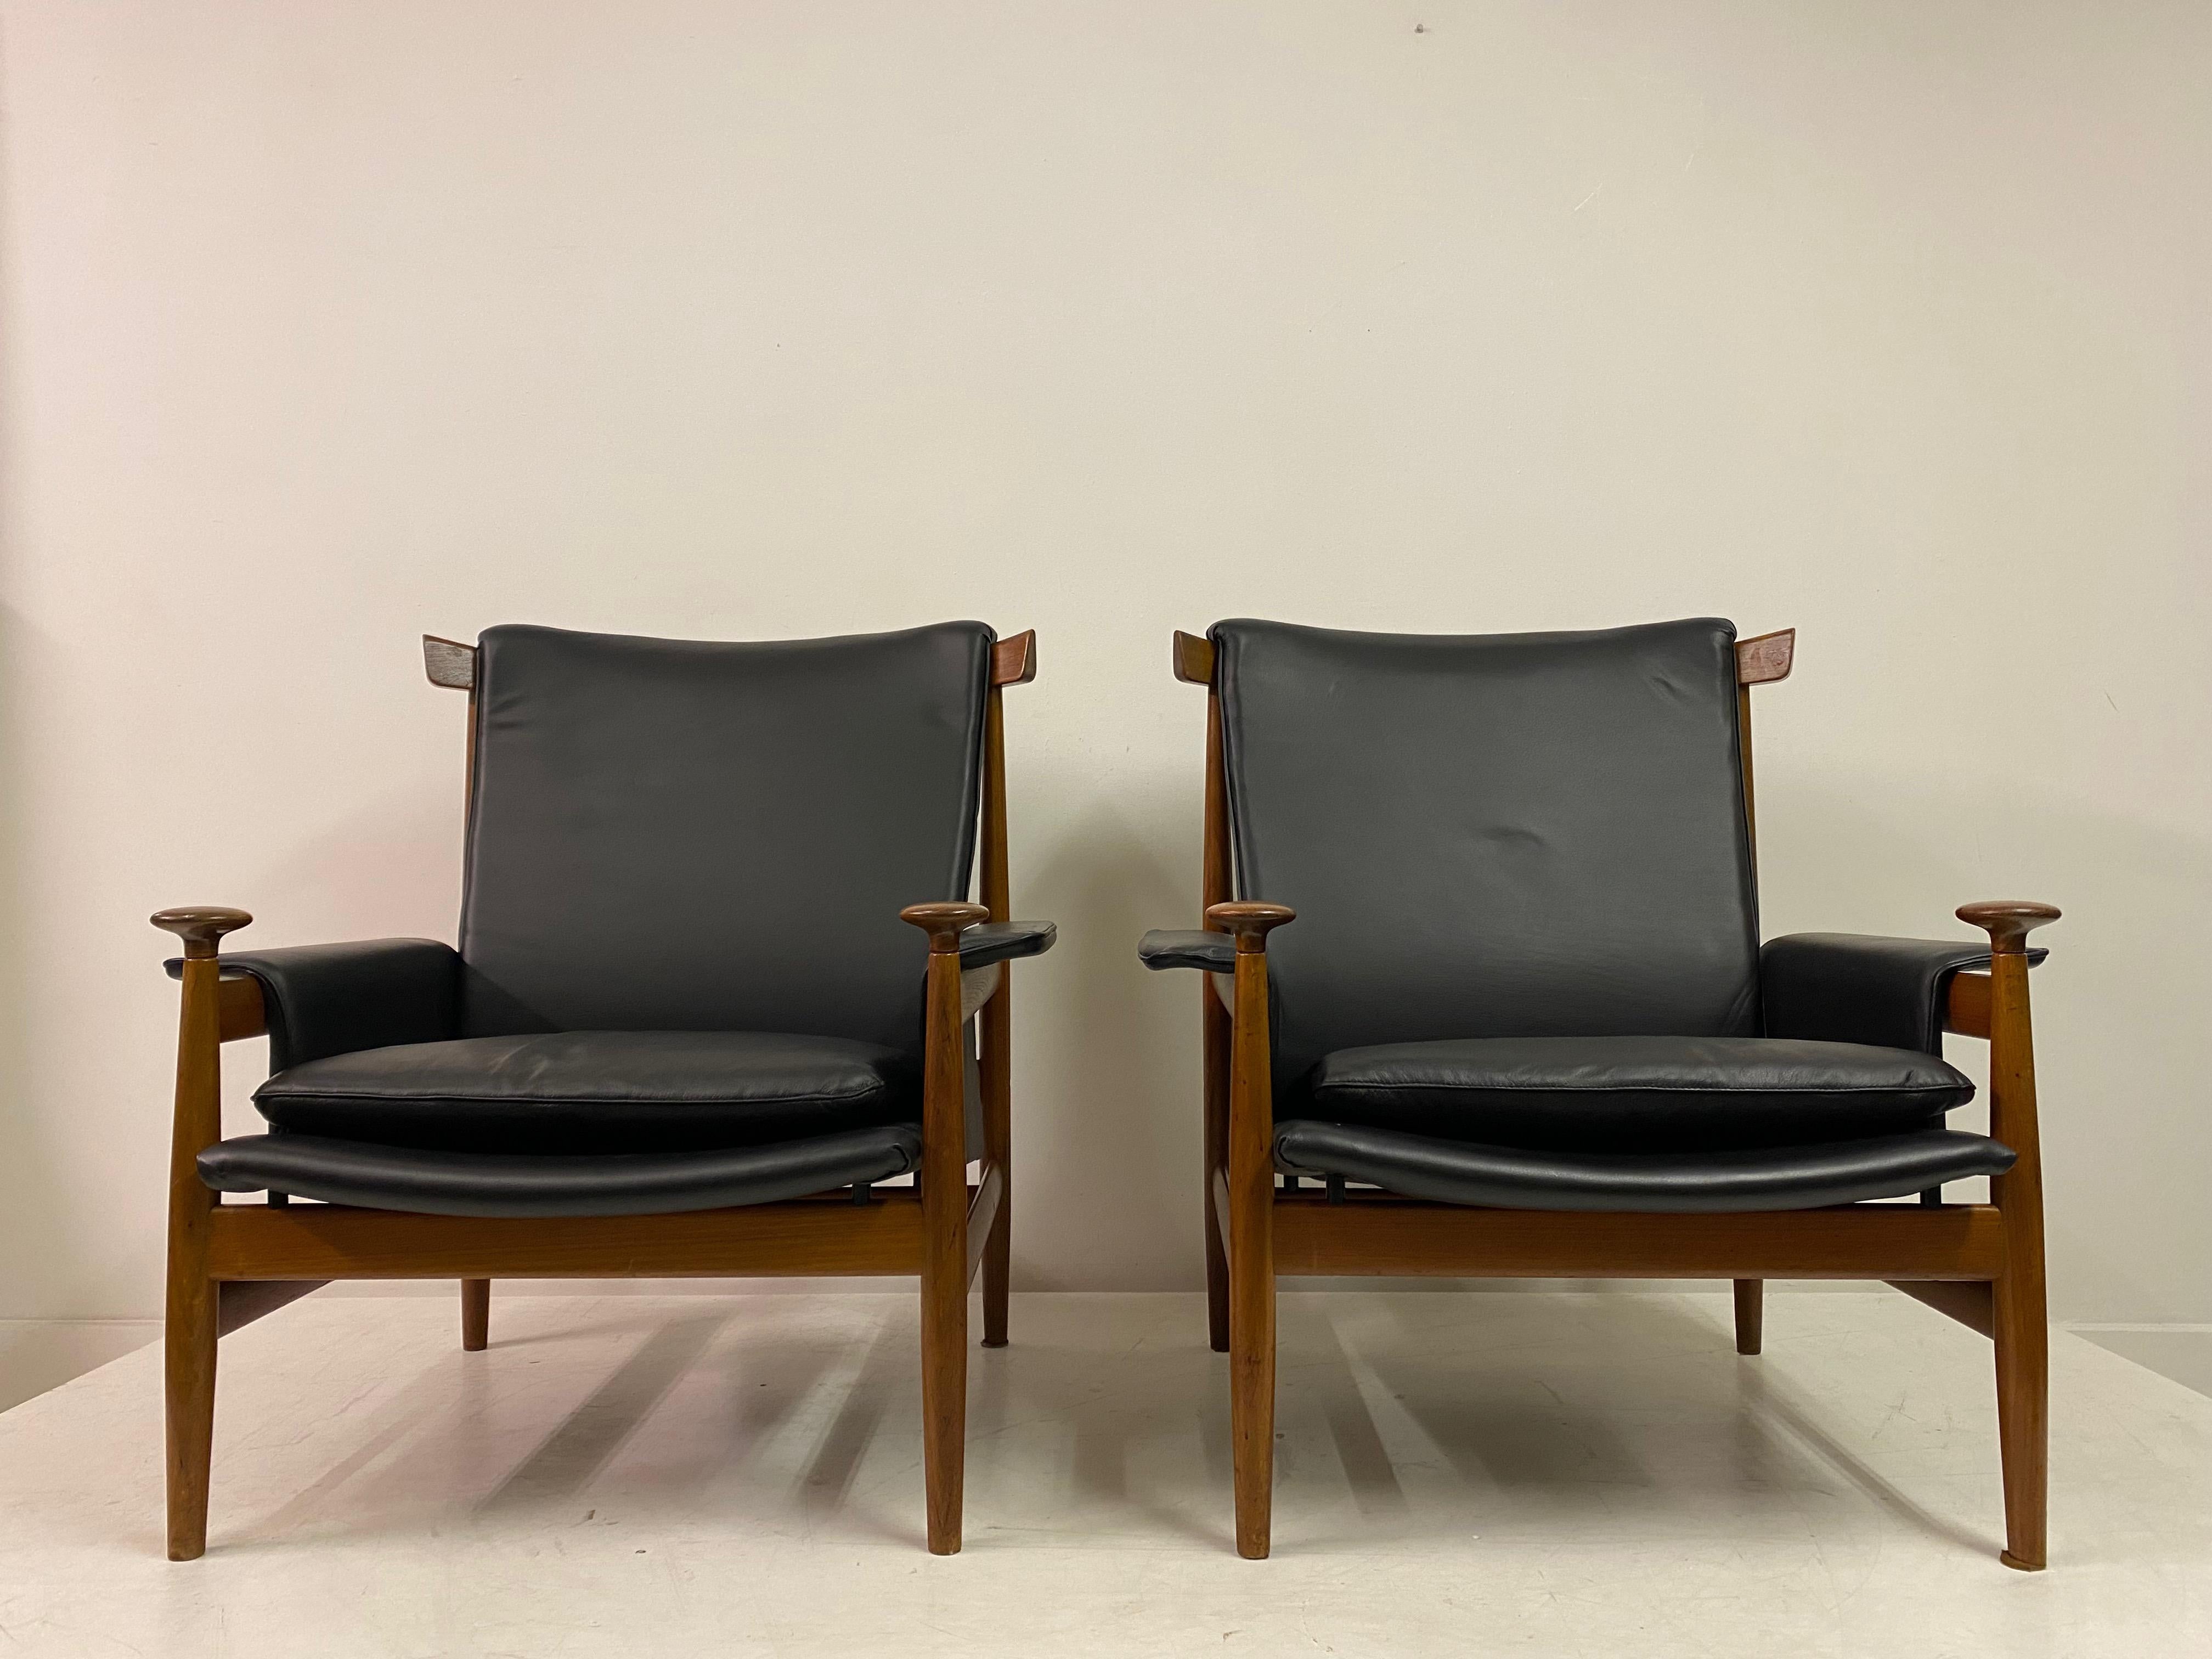 Paar Bwana Modell 152 Sessel

Von Finn Juhls

Für Frankreich und seinen Sohn

Rahmen aus Teakholz

Schwarze Lederpolsterung vor kurzem gemacht

Gebogene dreieckige Kopfstütze aus Holz

Knaufförmige Handauflagen

Dänemark 1960er Jahre.